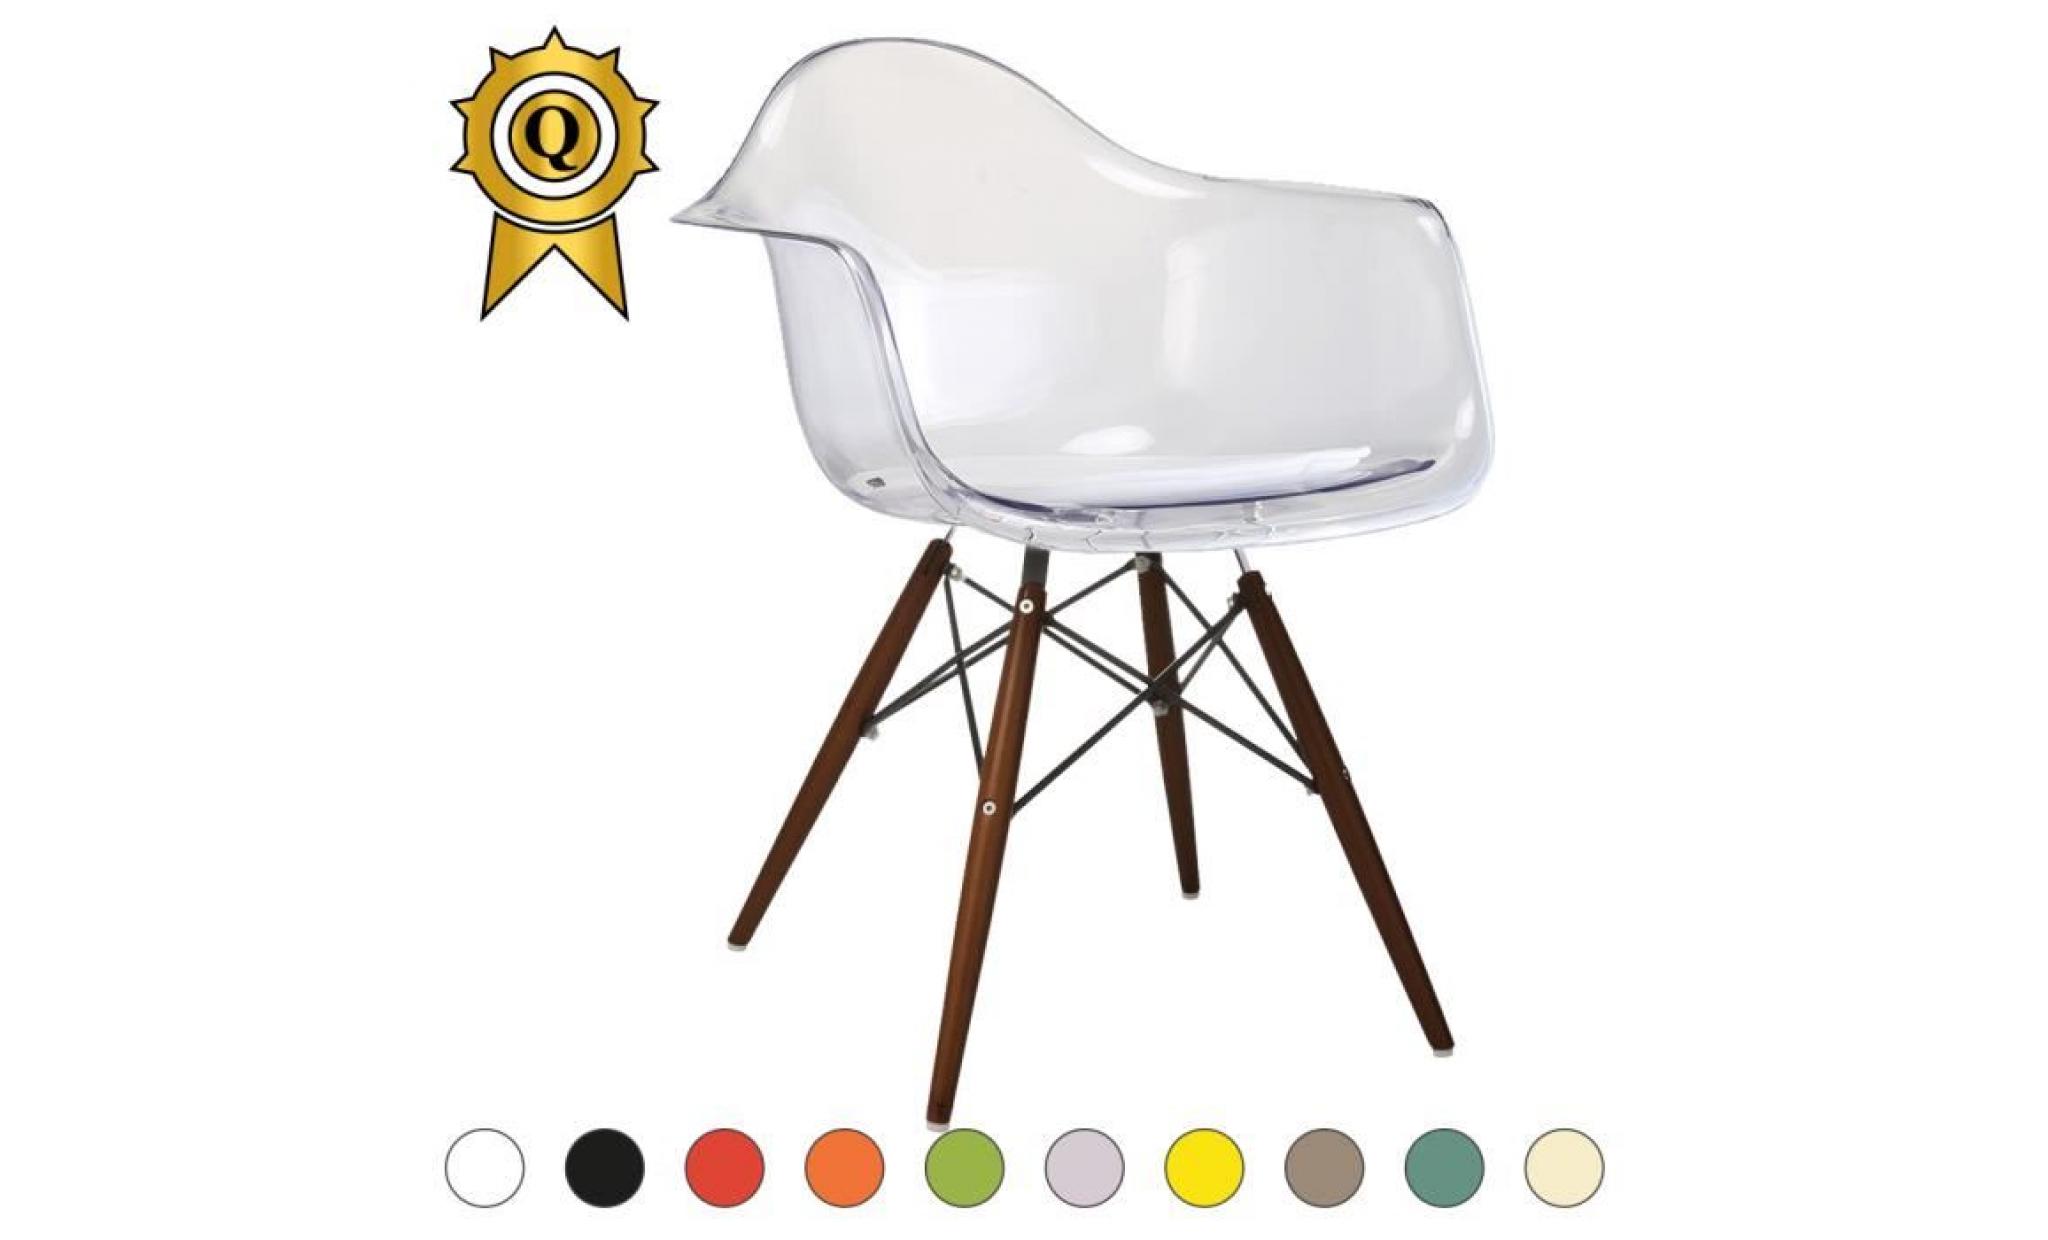 1 x fauteuil design retro style eames daw hauteur 48cm pieds en bois naturel gris perle mobistyl®